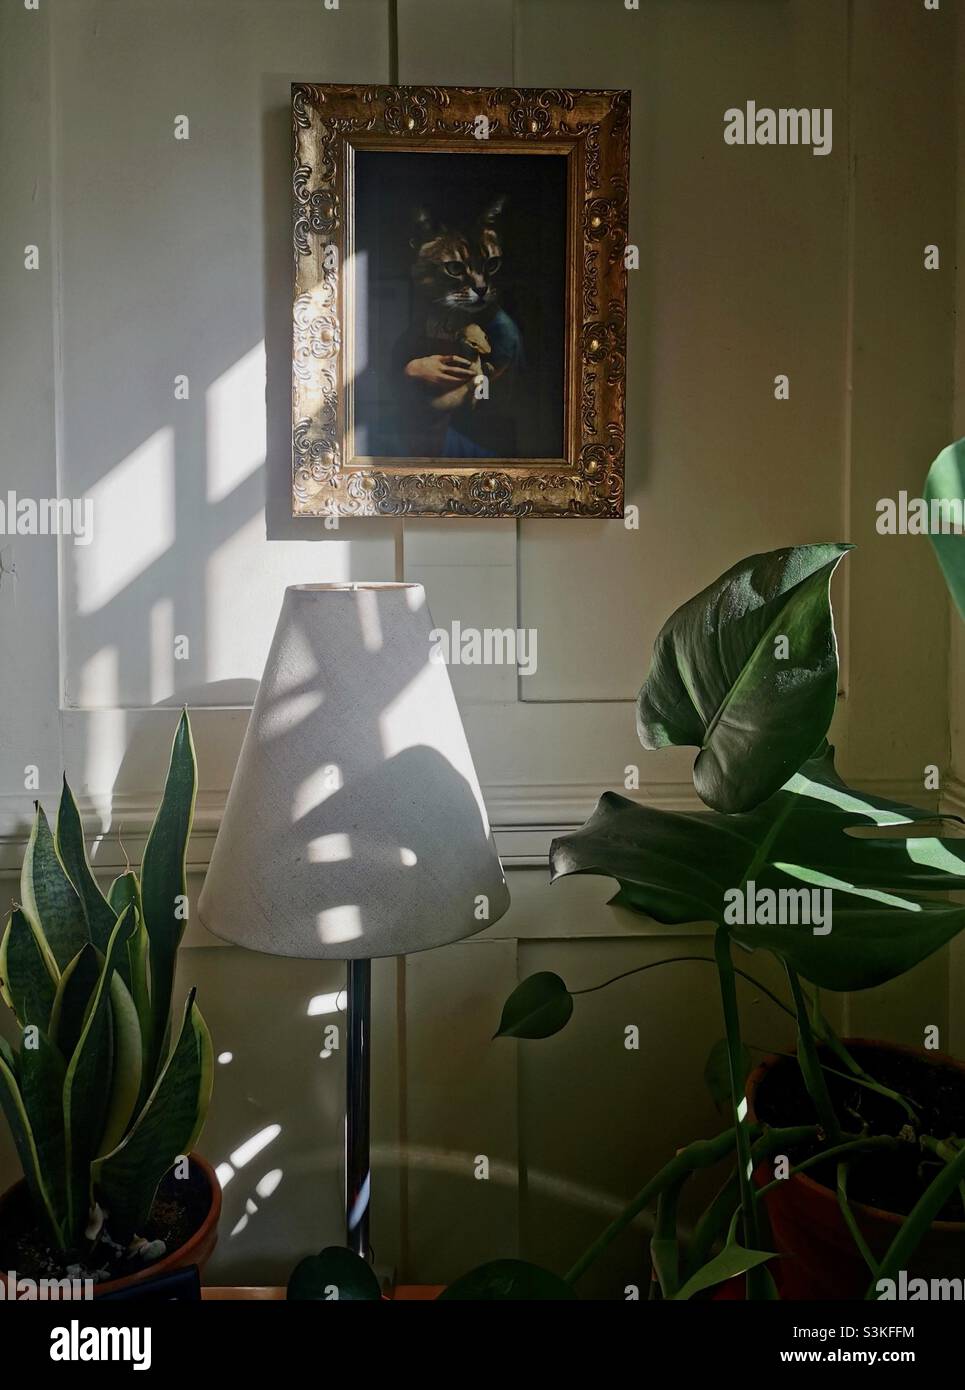 détail de l'intérieur avec reflet de l'ombre et cadre doré, abat-jour et plantes Banque D'Images